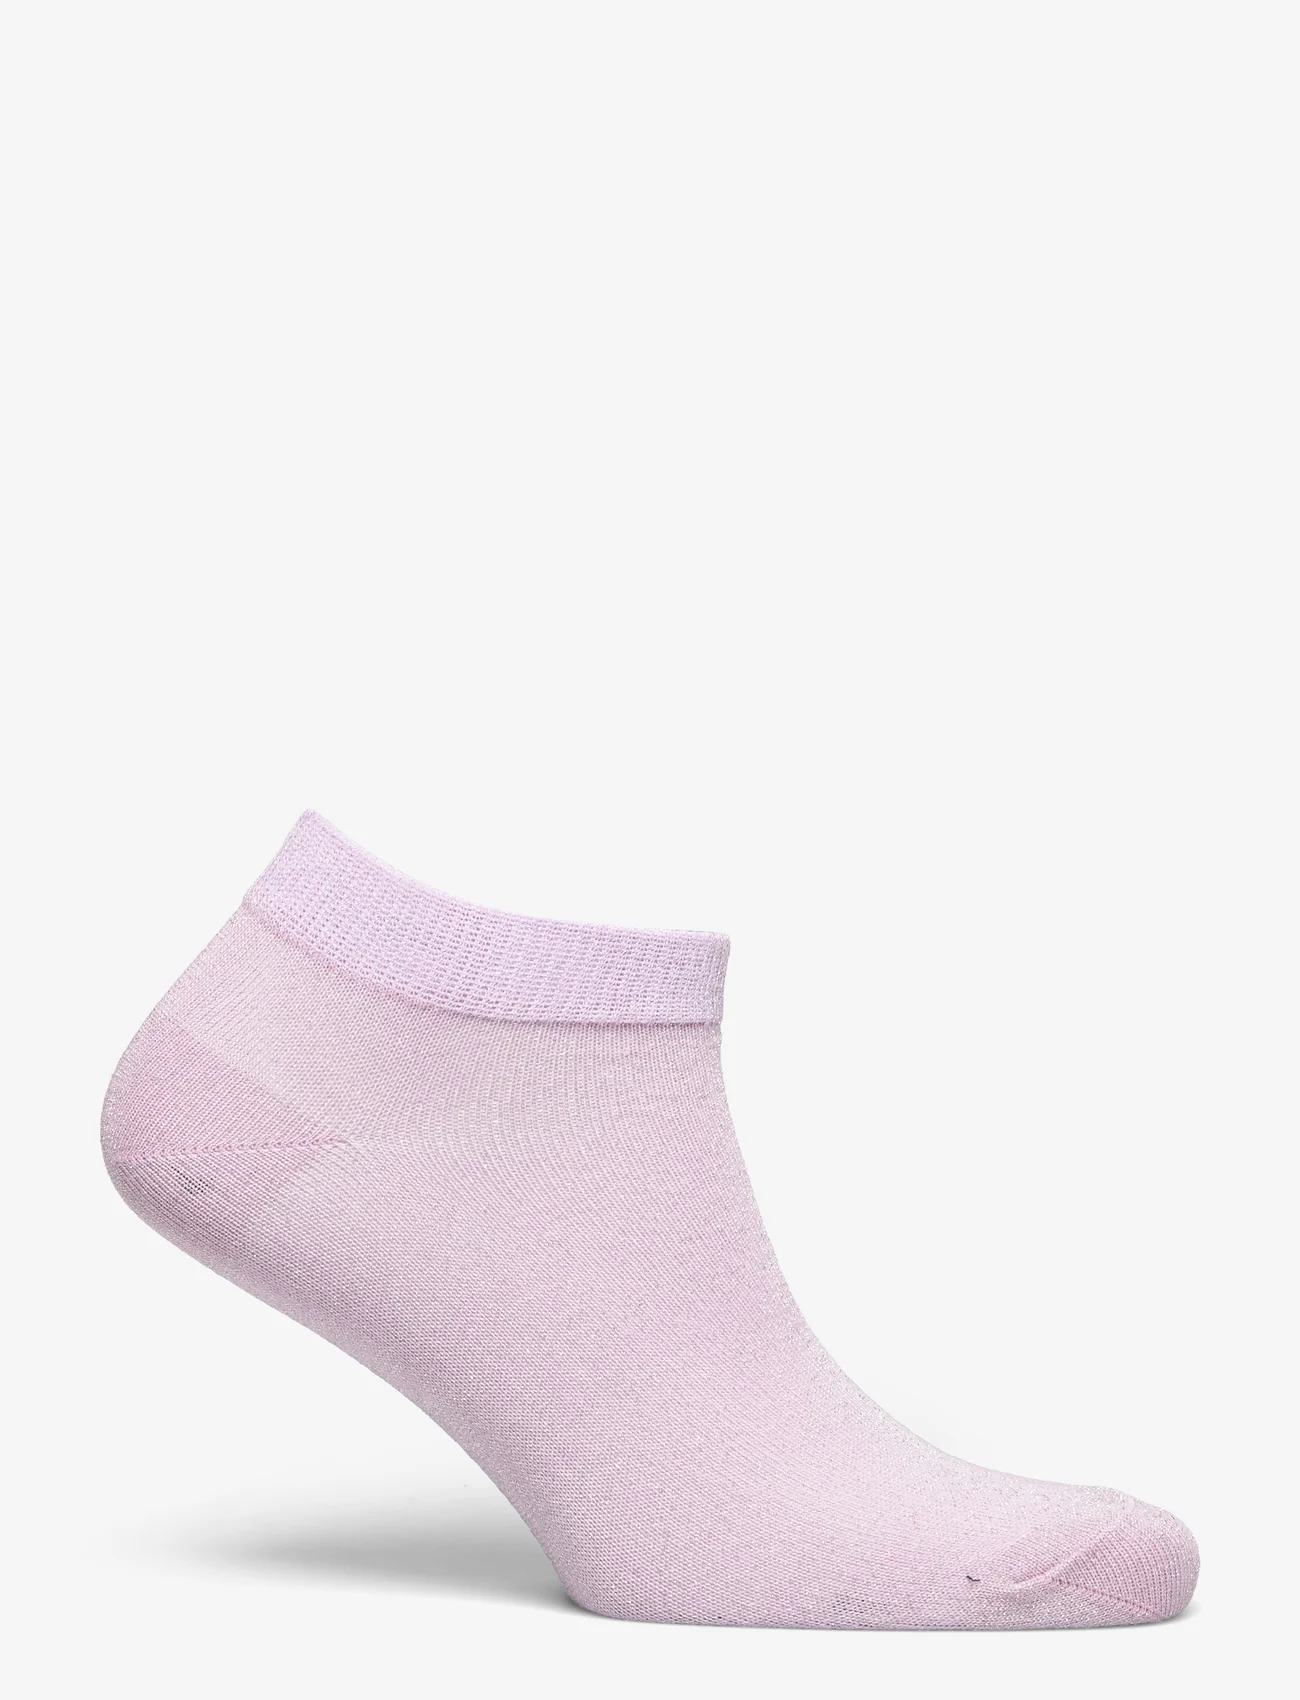 mp Denmark - Zoe sneaker socks - lowest prices - fragrant lilac - 1